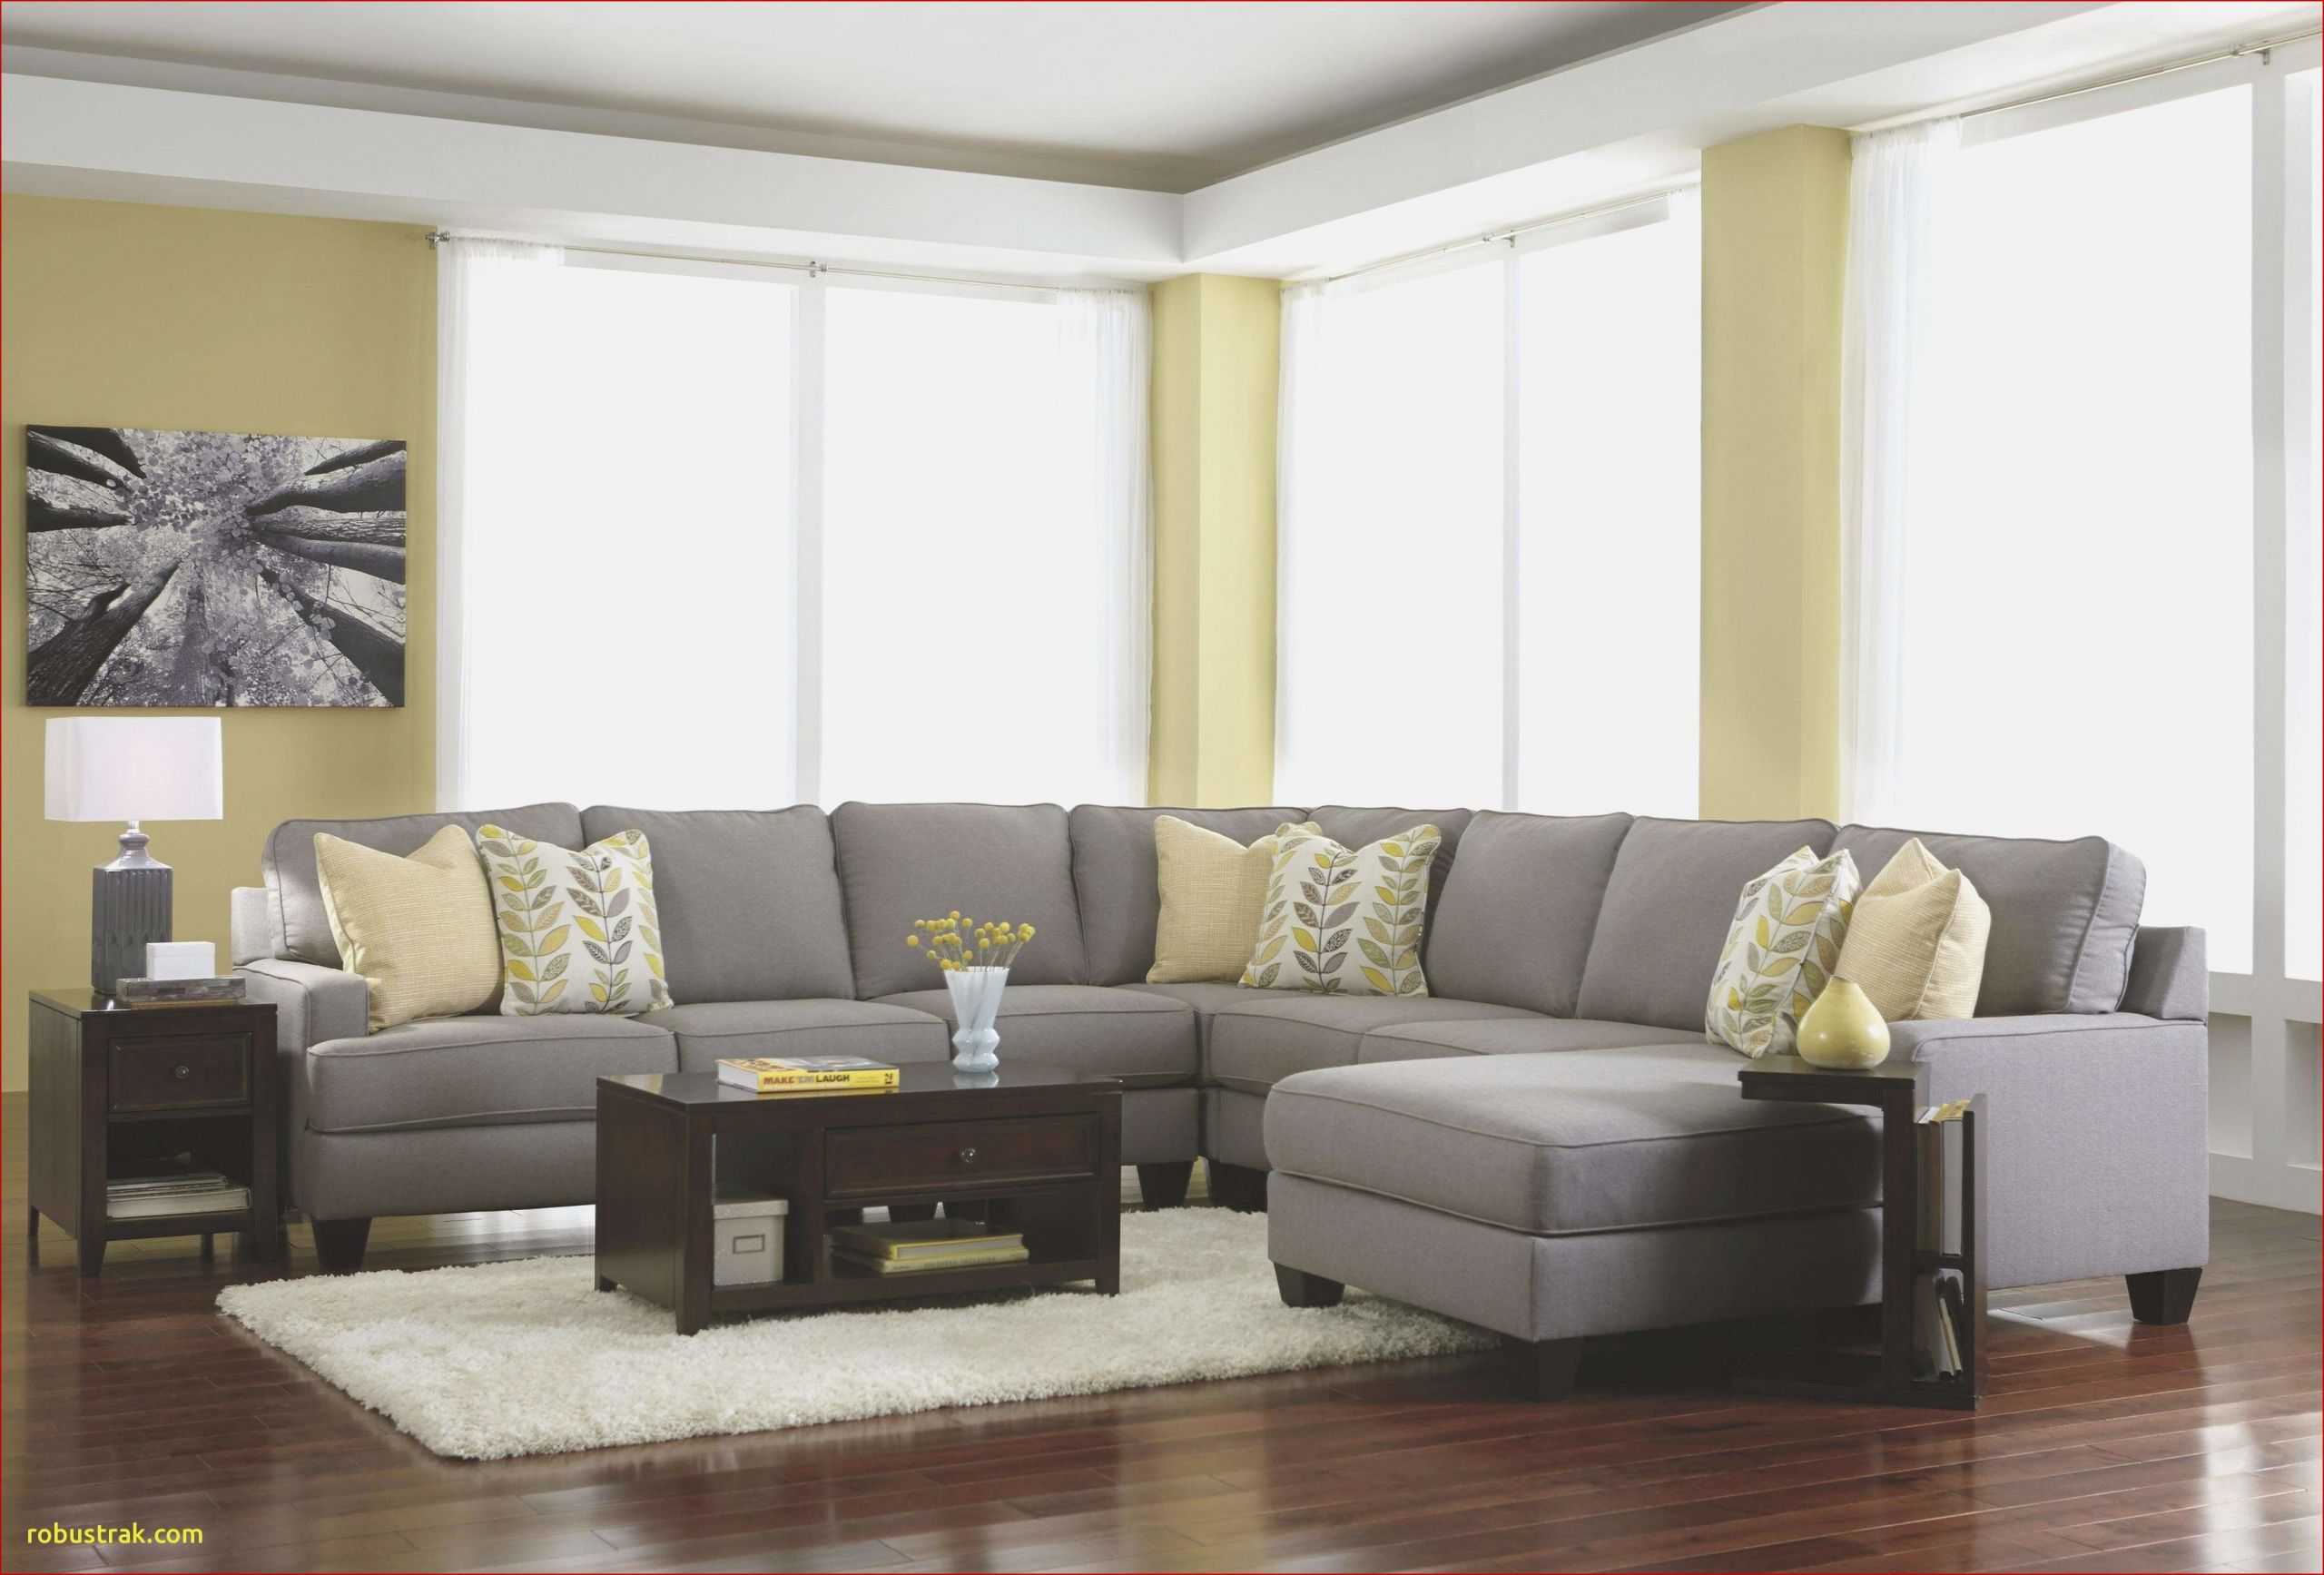 meuble de sejour meuble living sejour tables de salon design luxe s i pinimg 736x of meuble de sejour